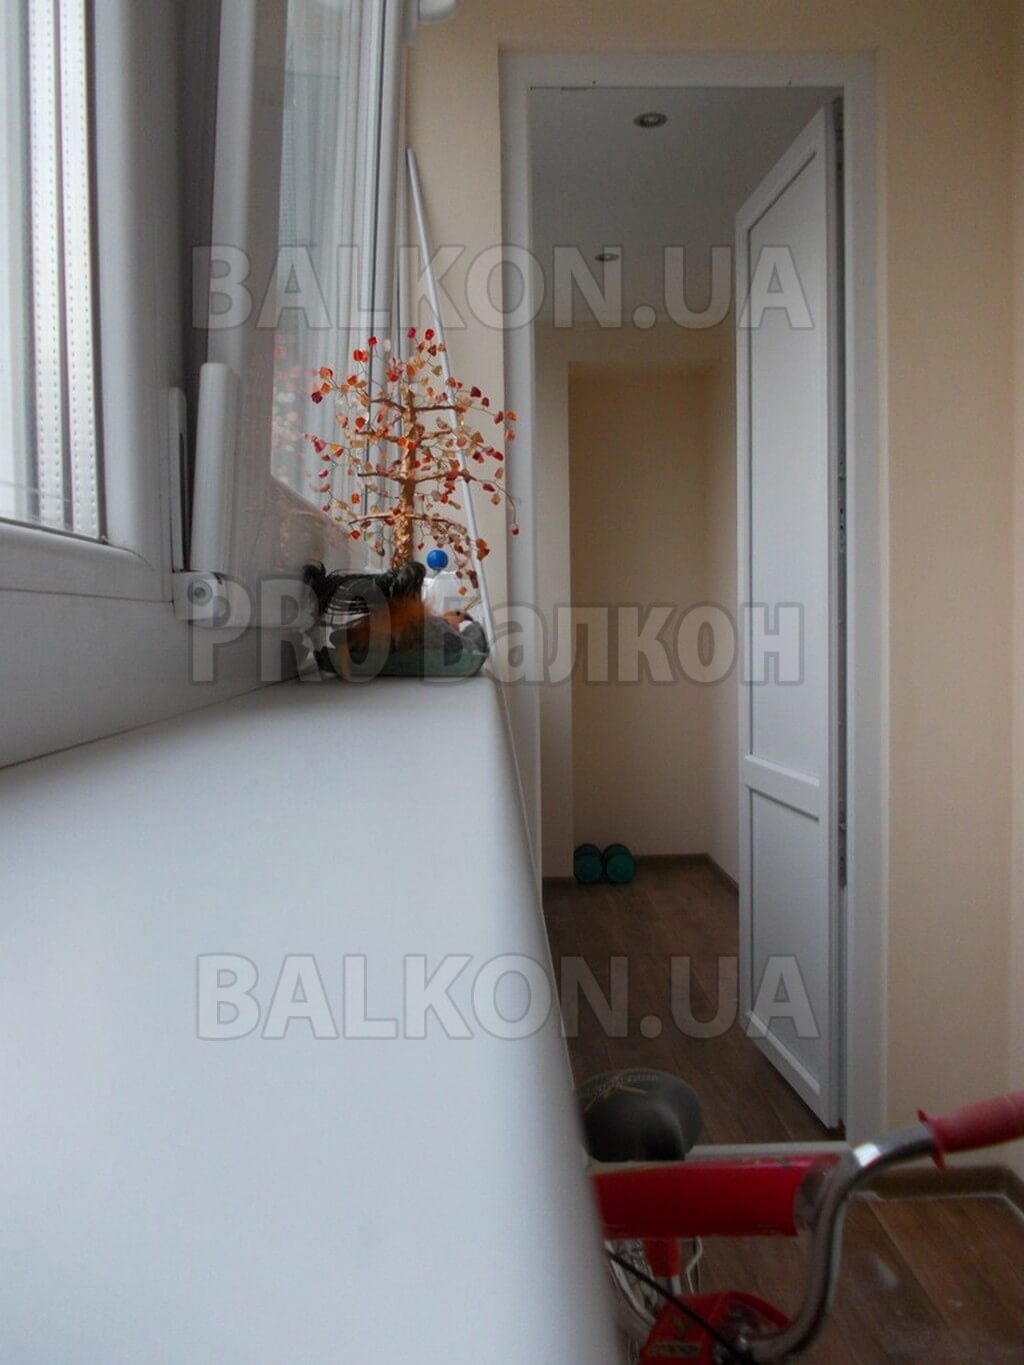 фотоТеплый балкон. Продление квартиры на балкон Чернигов Самострова 10